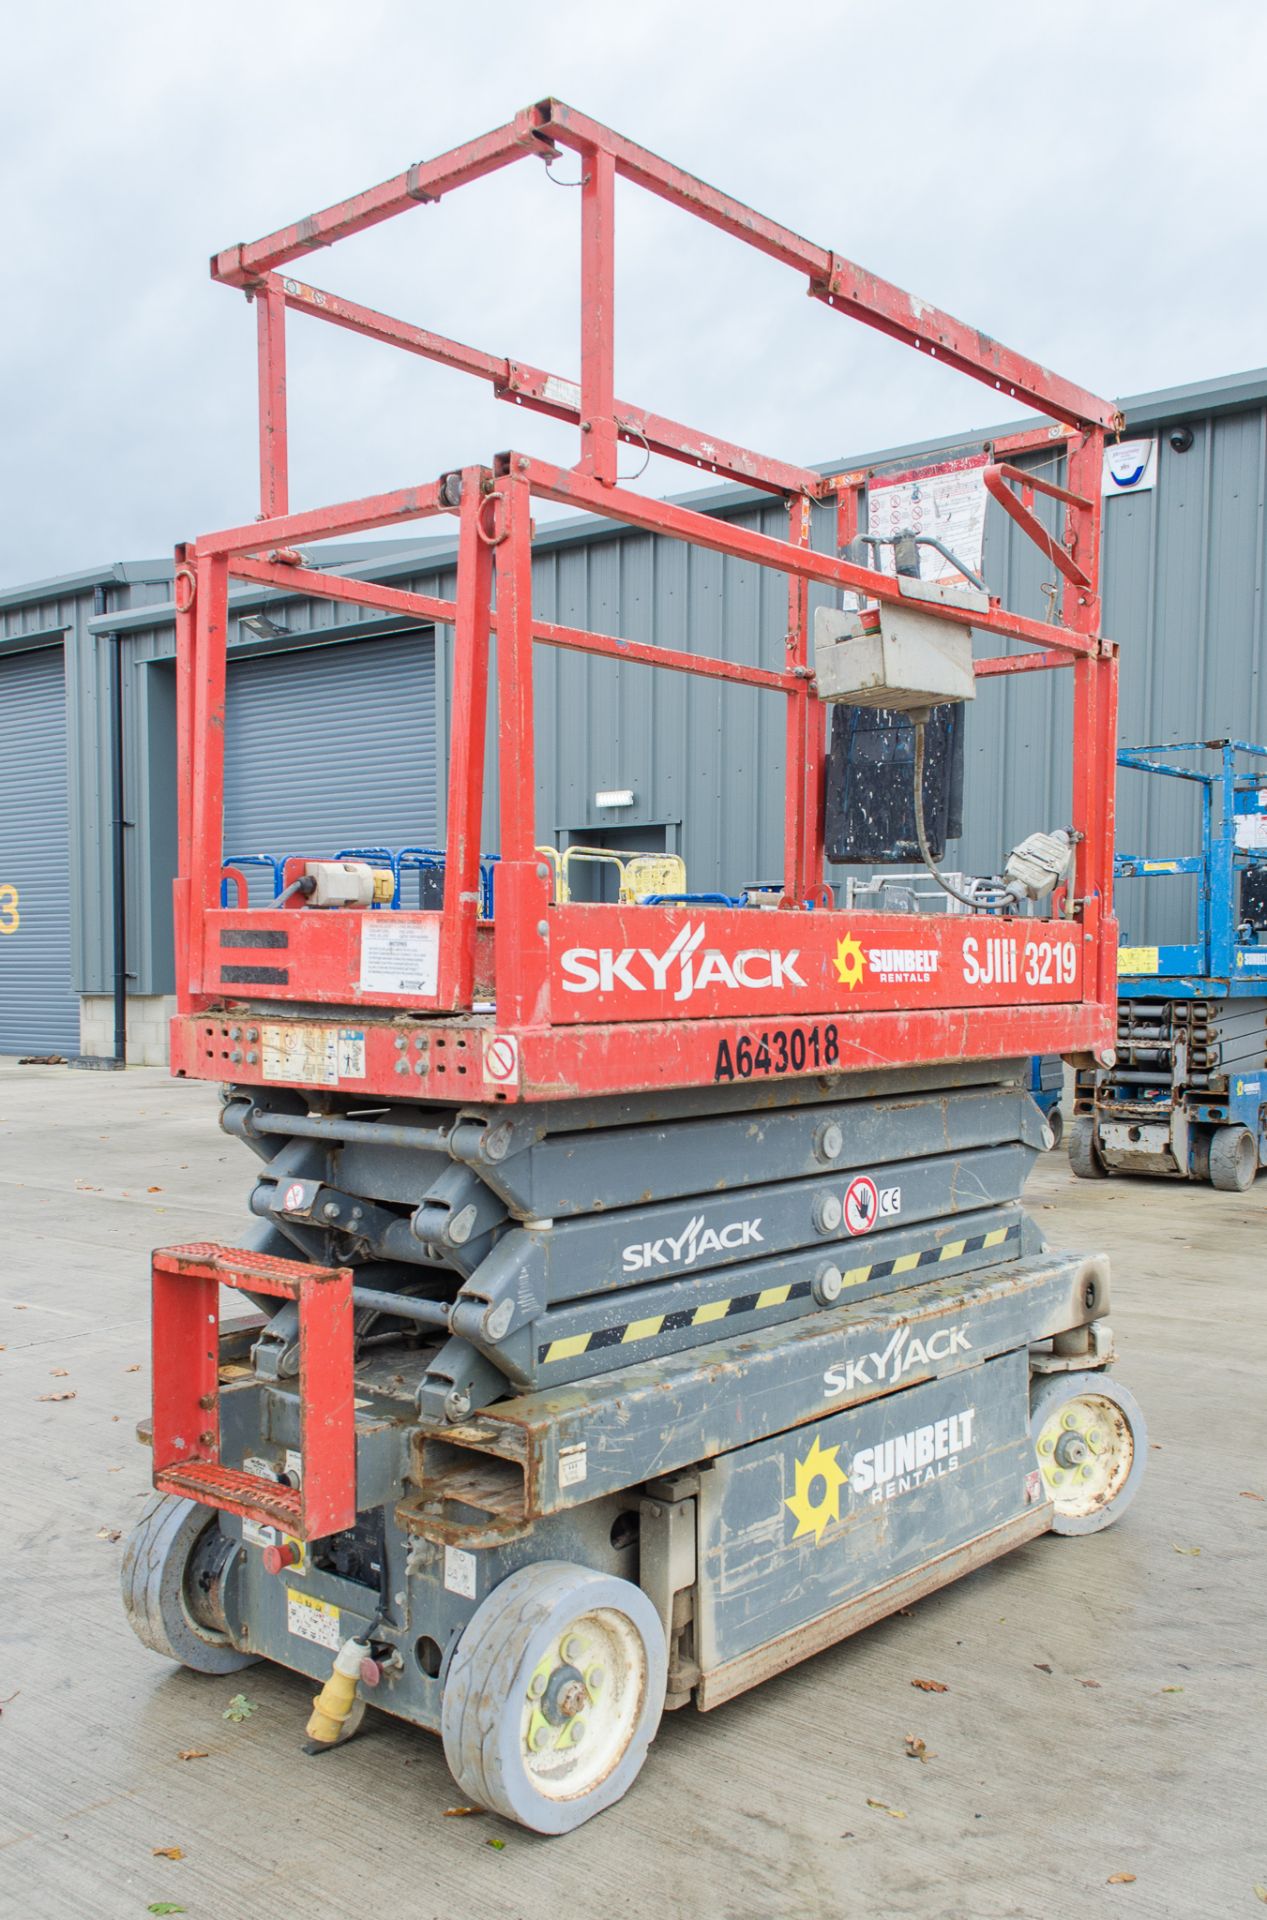 Skyjack SJ111 3219 battery electric scissor lift Year:- 2014 S/N: 22065074 A643018